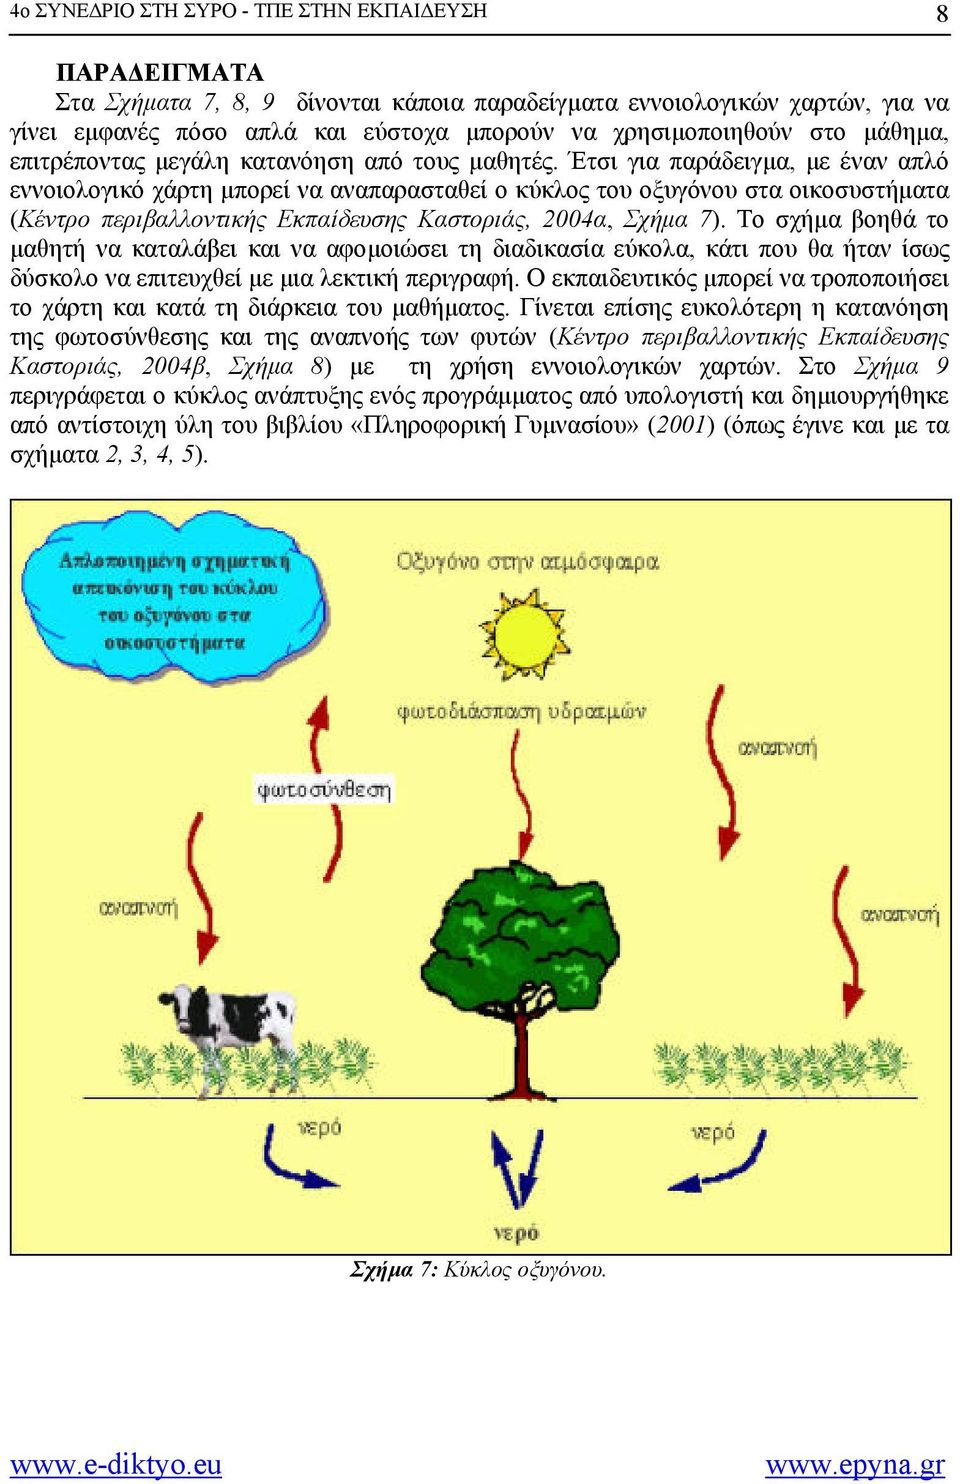 Έτσι για παράδειγµα, µε έναν απλό εννοιολογικό χάρτη µπορεί να αναπαρασταθεί ο κύκλος του οξυγόνου στα οικοσυστήµατα (Κέντρο περιβαλλοντικής Εκπαίδευσης Καστοριάς, 2004α, Σχήµα 7).